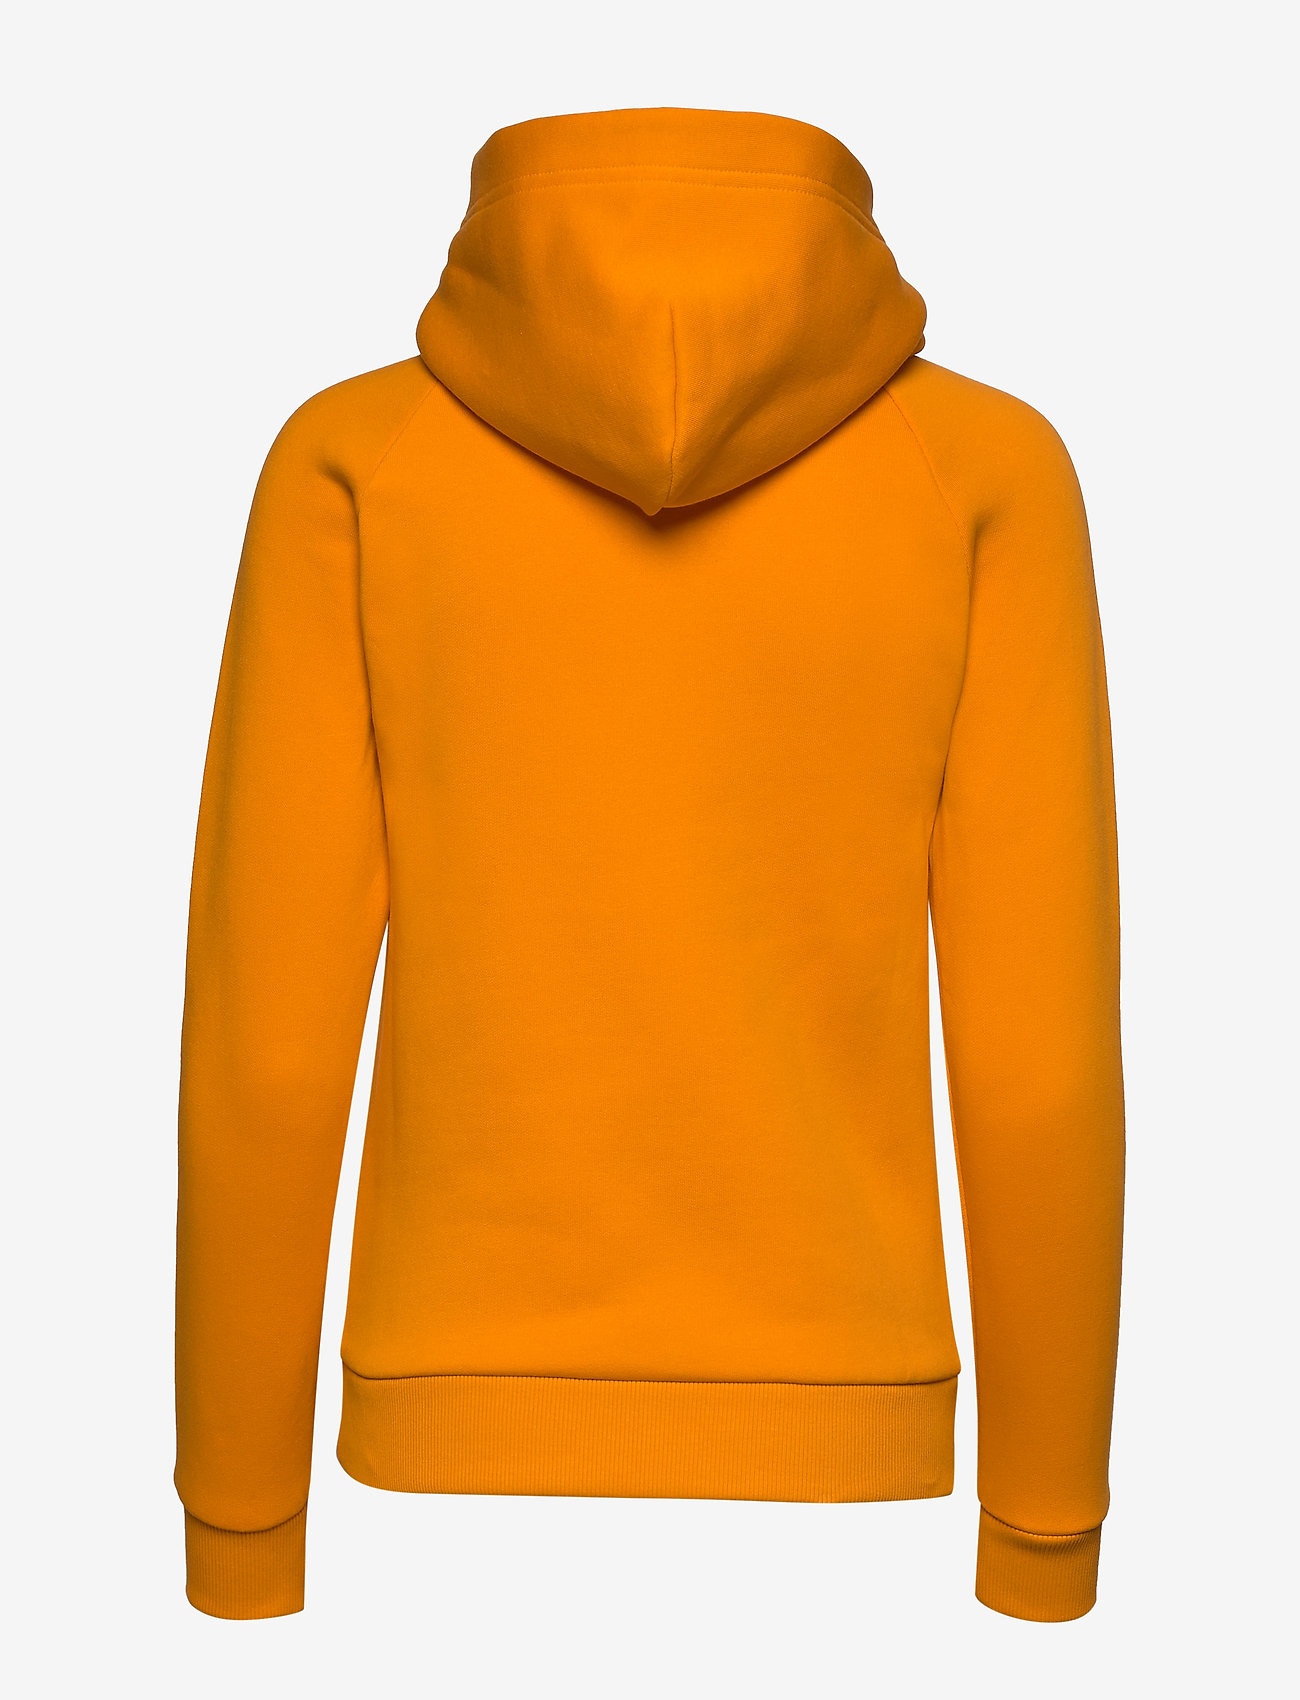 peak performance hoodie yellow